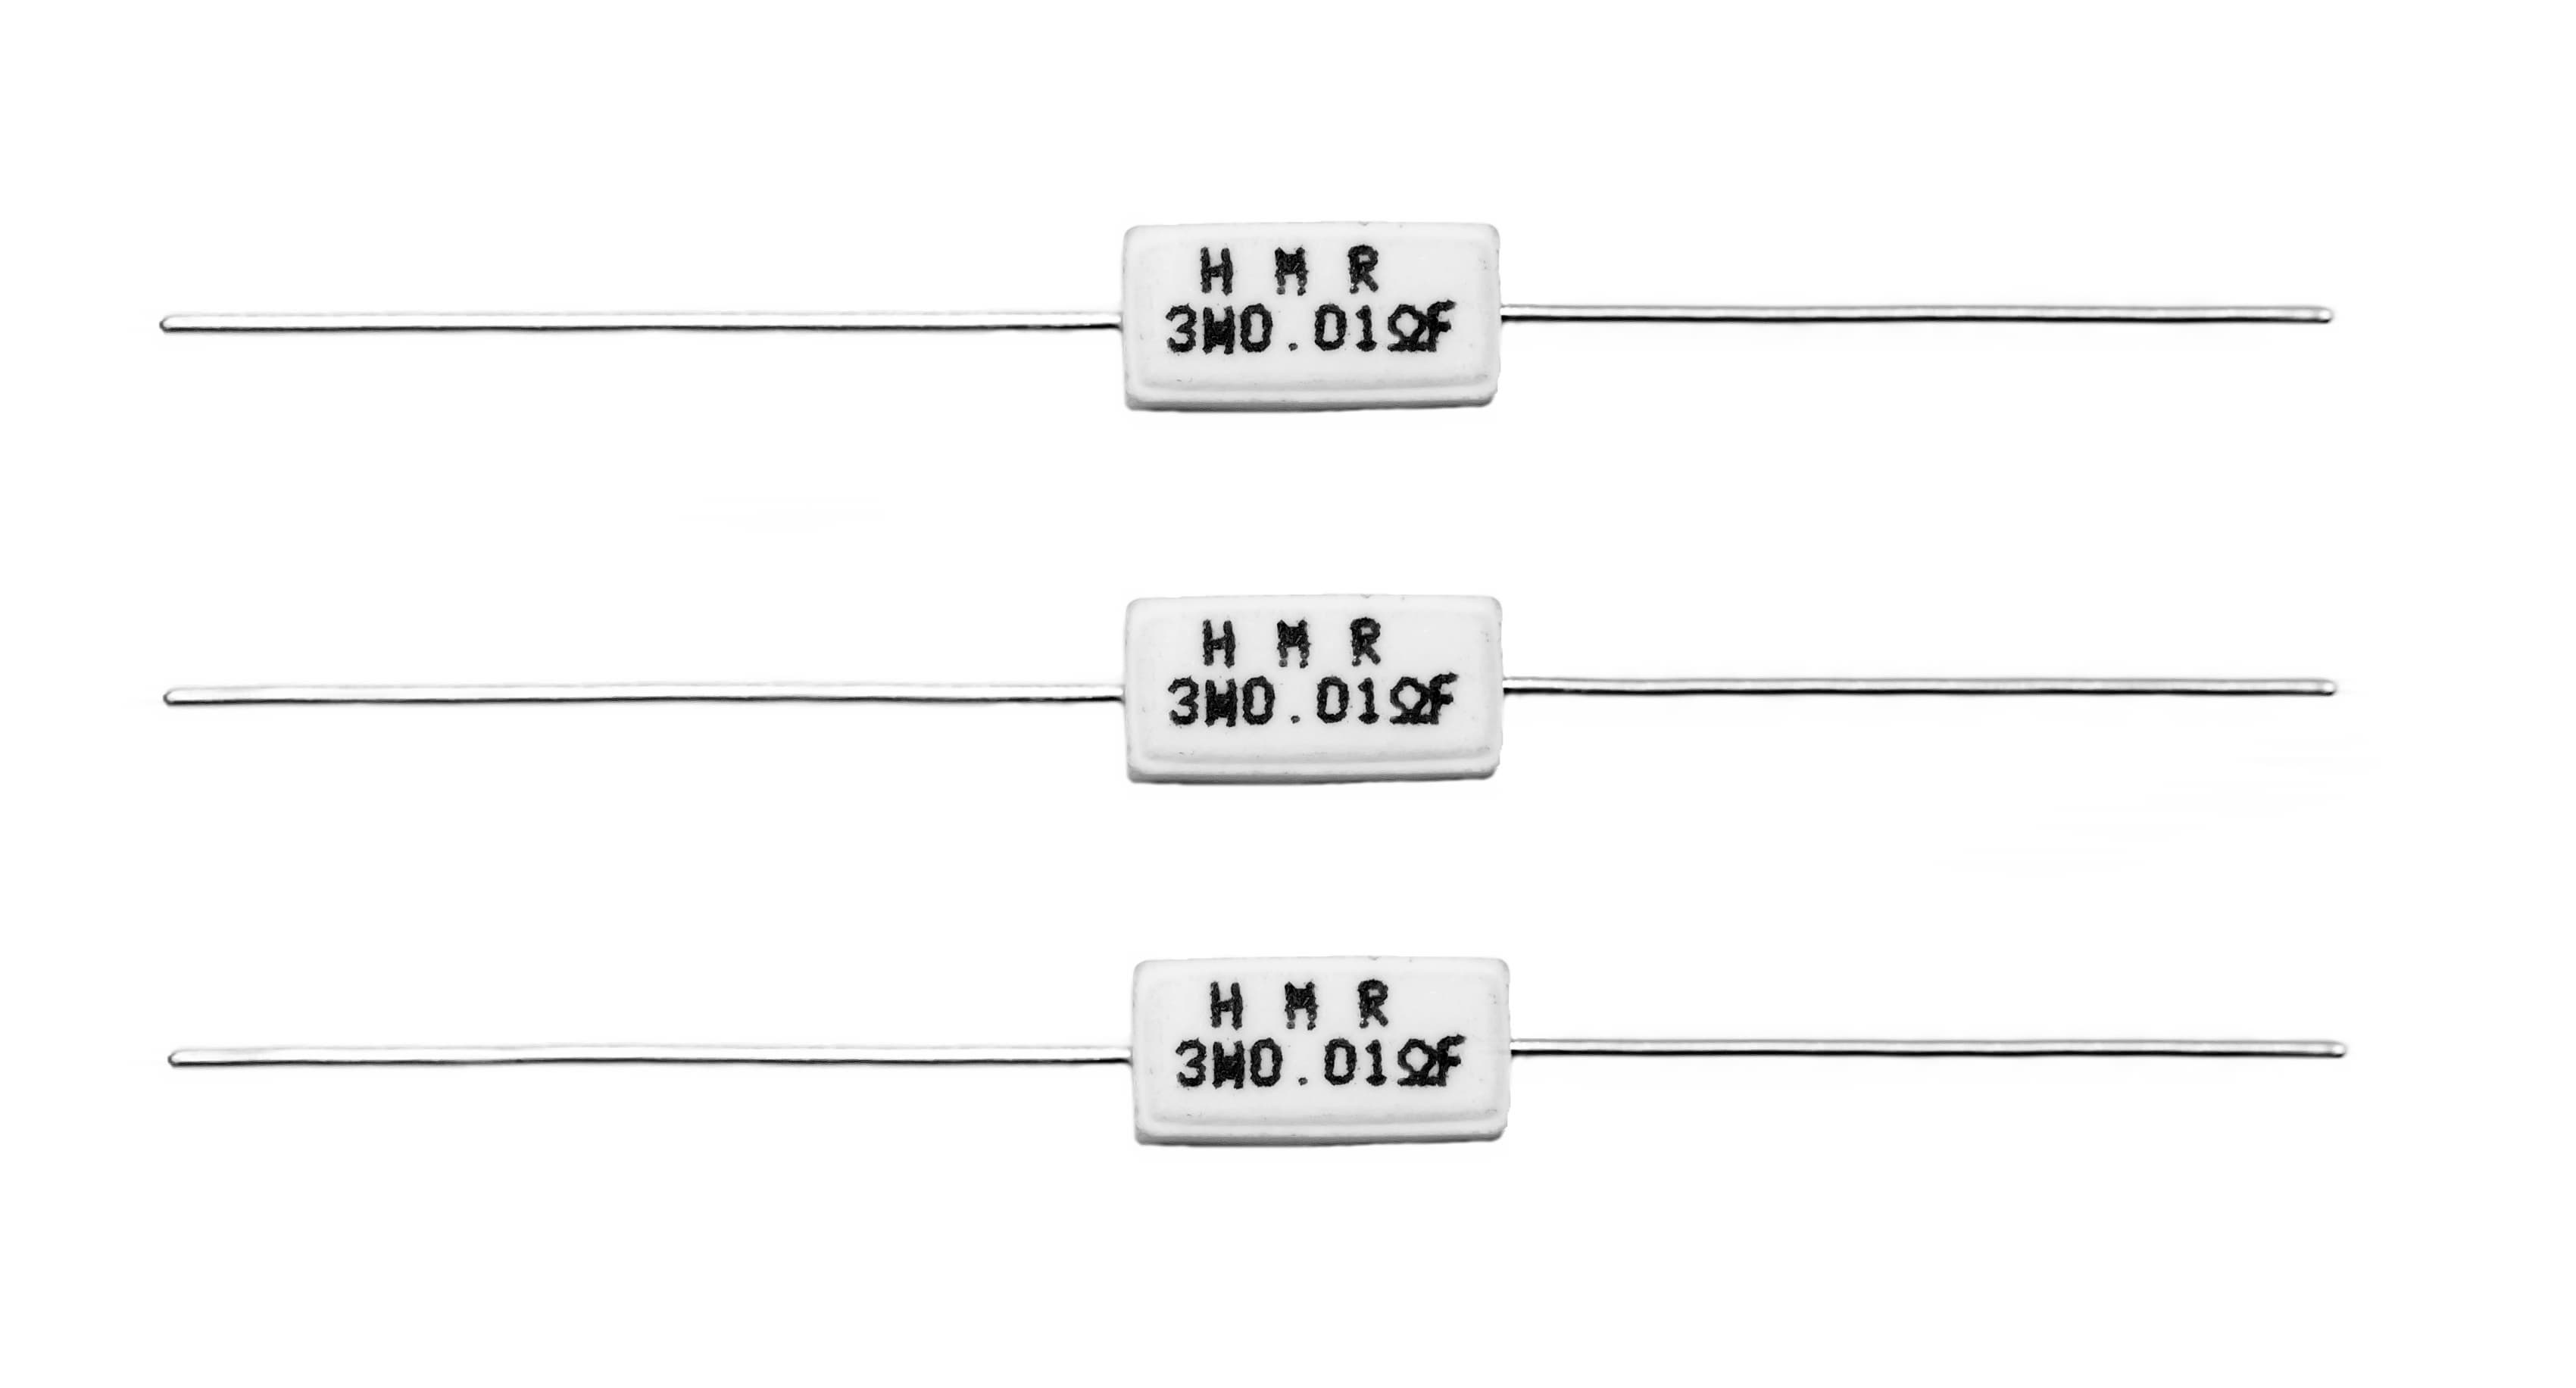 MPR series_Metal plate resistor_